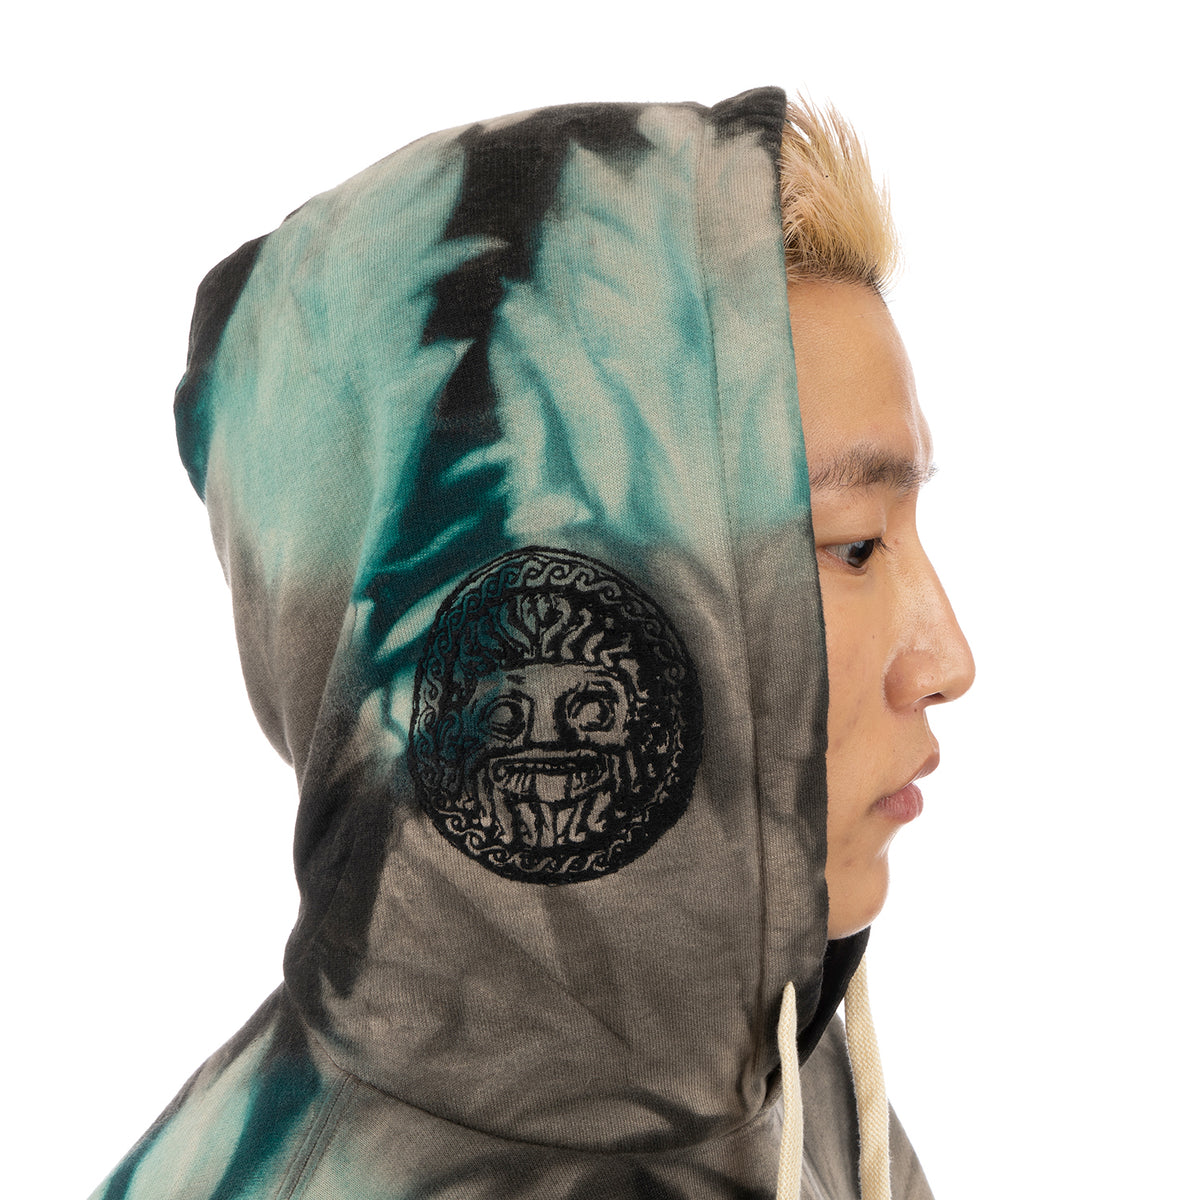 Danilo Paura | 'Akim' Embroidery Hoody Sweatshirt Turquoise - Concrete